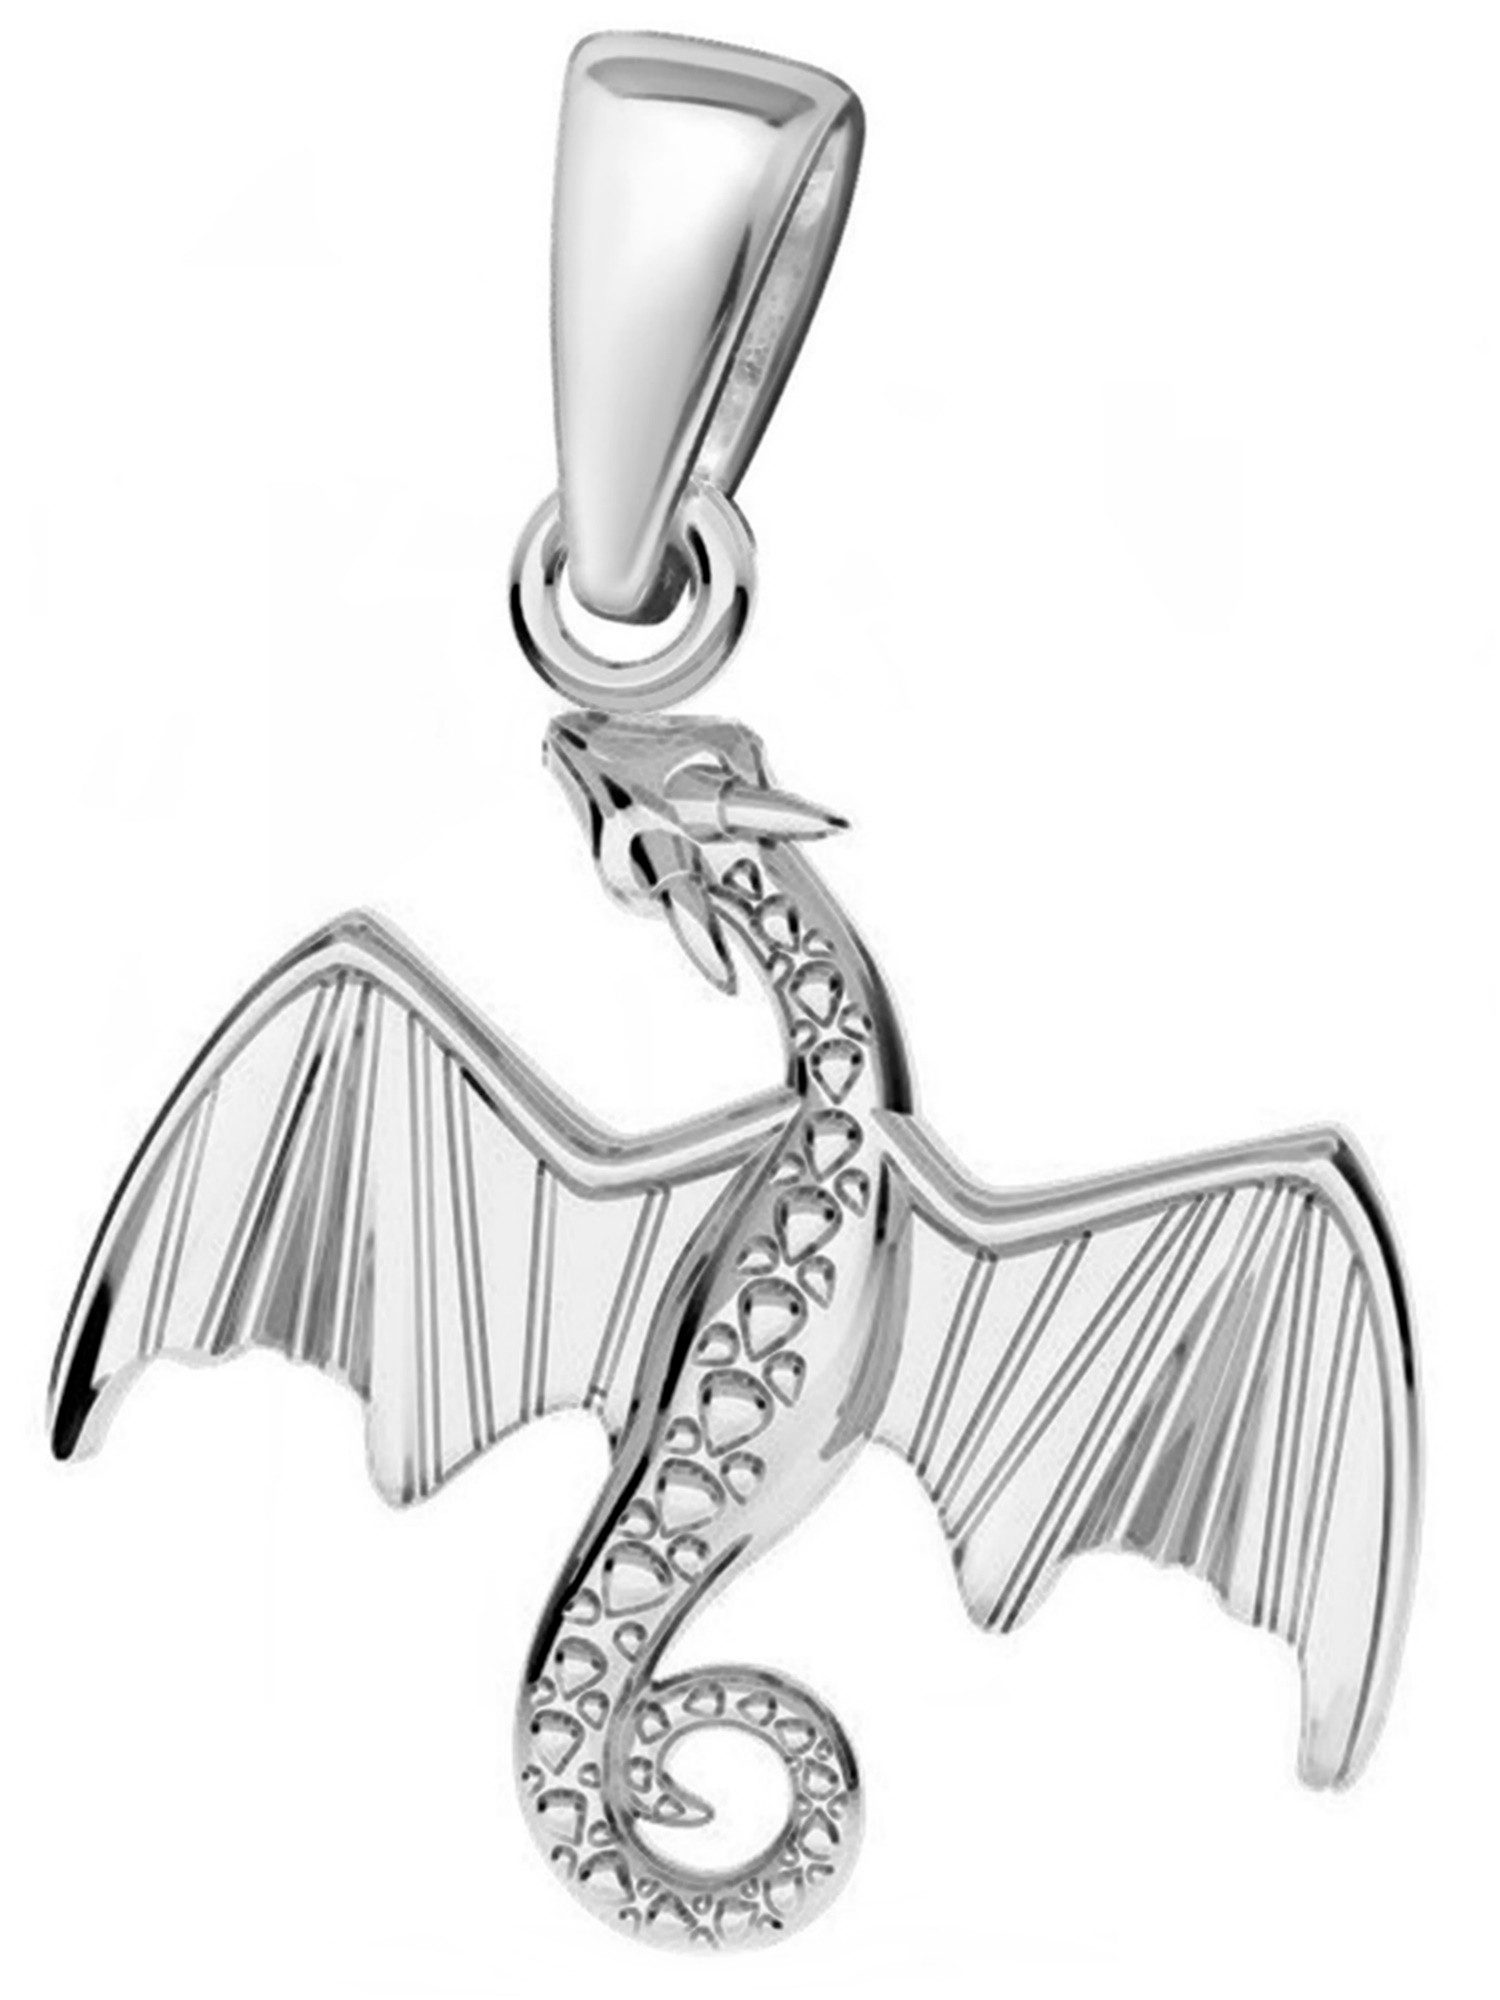 Goldene Hufeisen Kettenanhänger Drache Anhänger für Halskette aus 925 Sterling Silber Kettenanhänger (1 Stück, inkl. Etui)